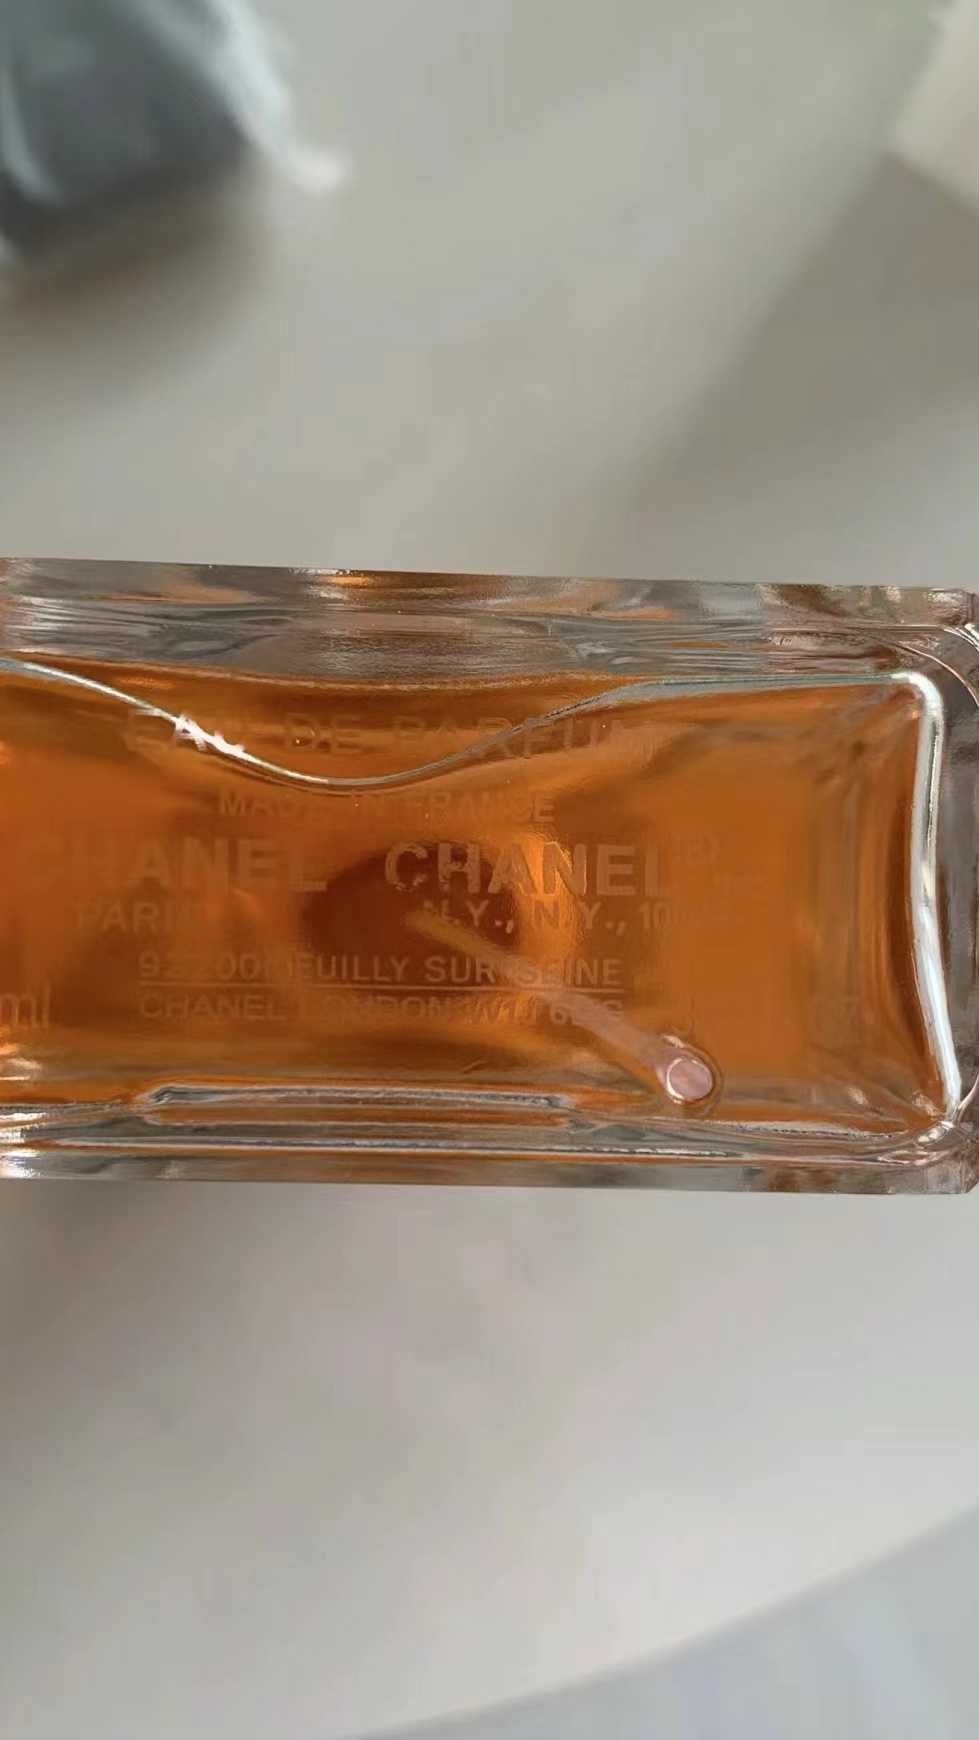 Chanel COCO MADEMOISELLE 100ML nowy, nieużywany